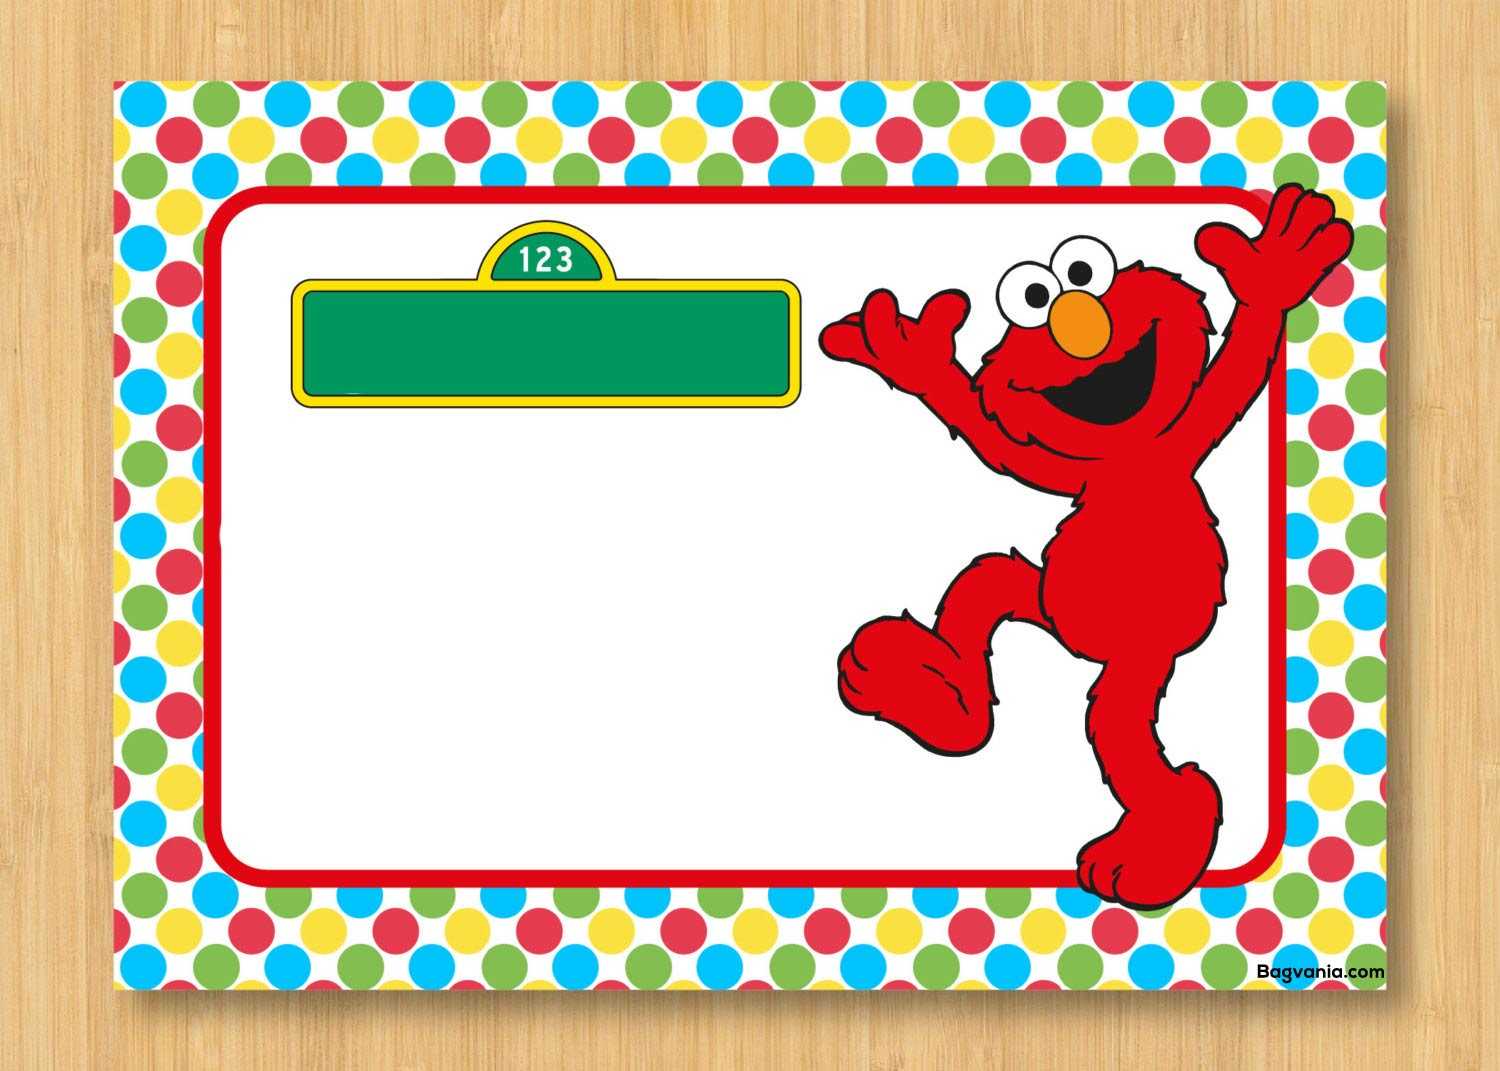 Free Printable Elmo Birthday Invitations – Bagvania Pertaining To Elmo Birthday Card Template